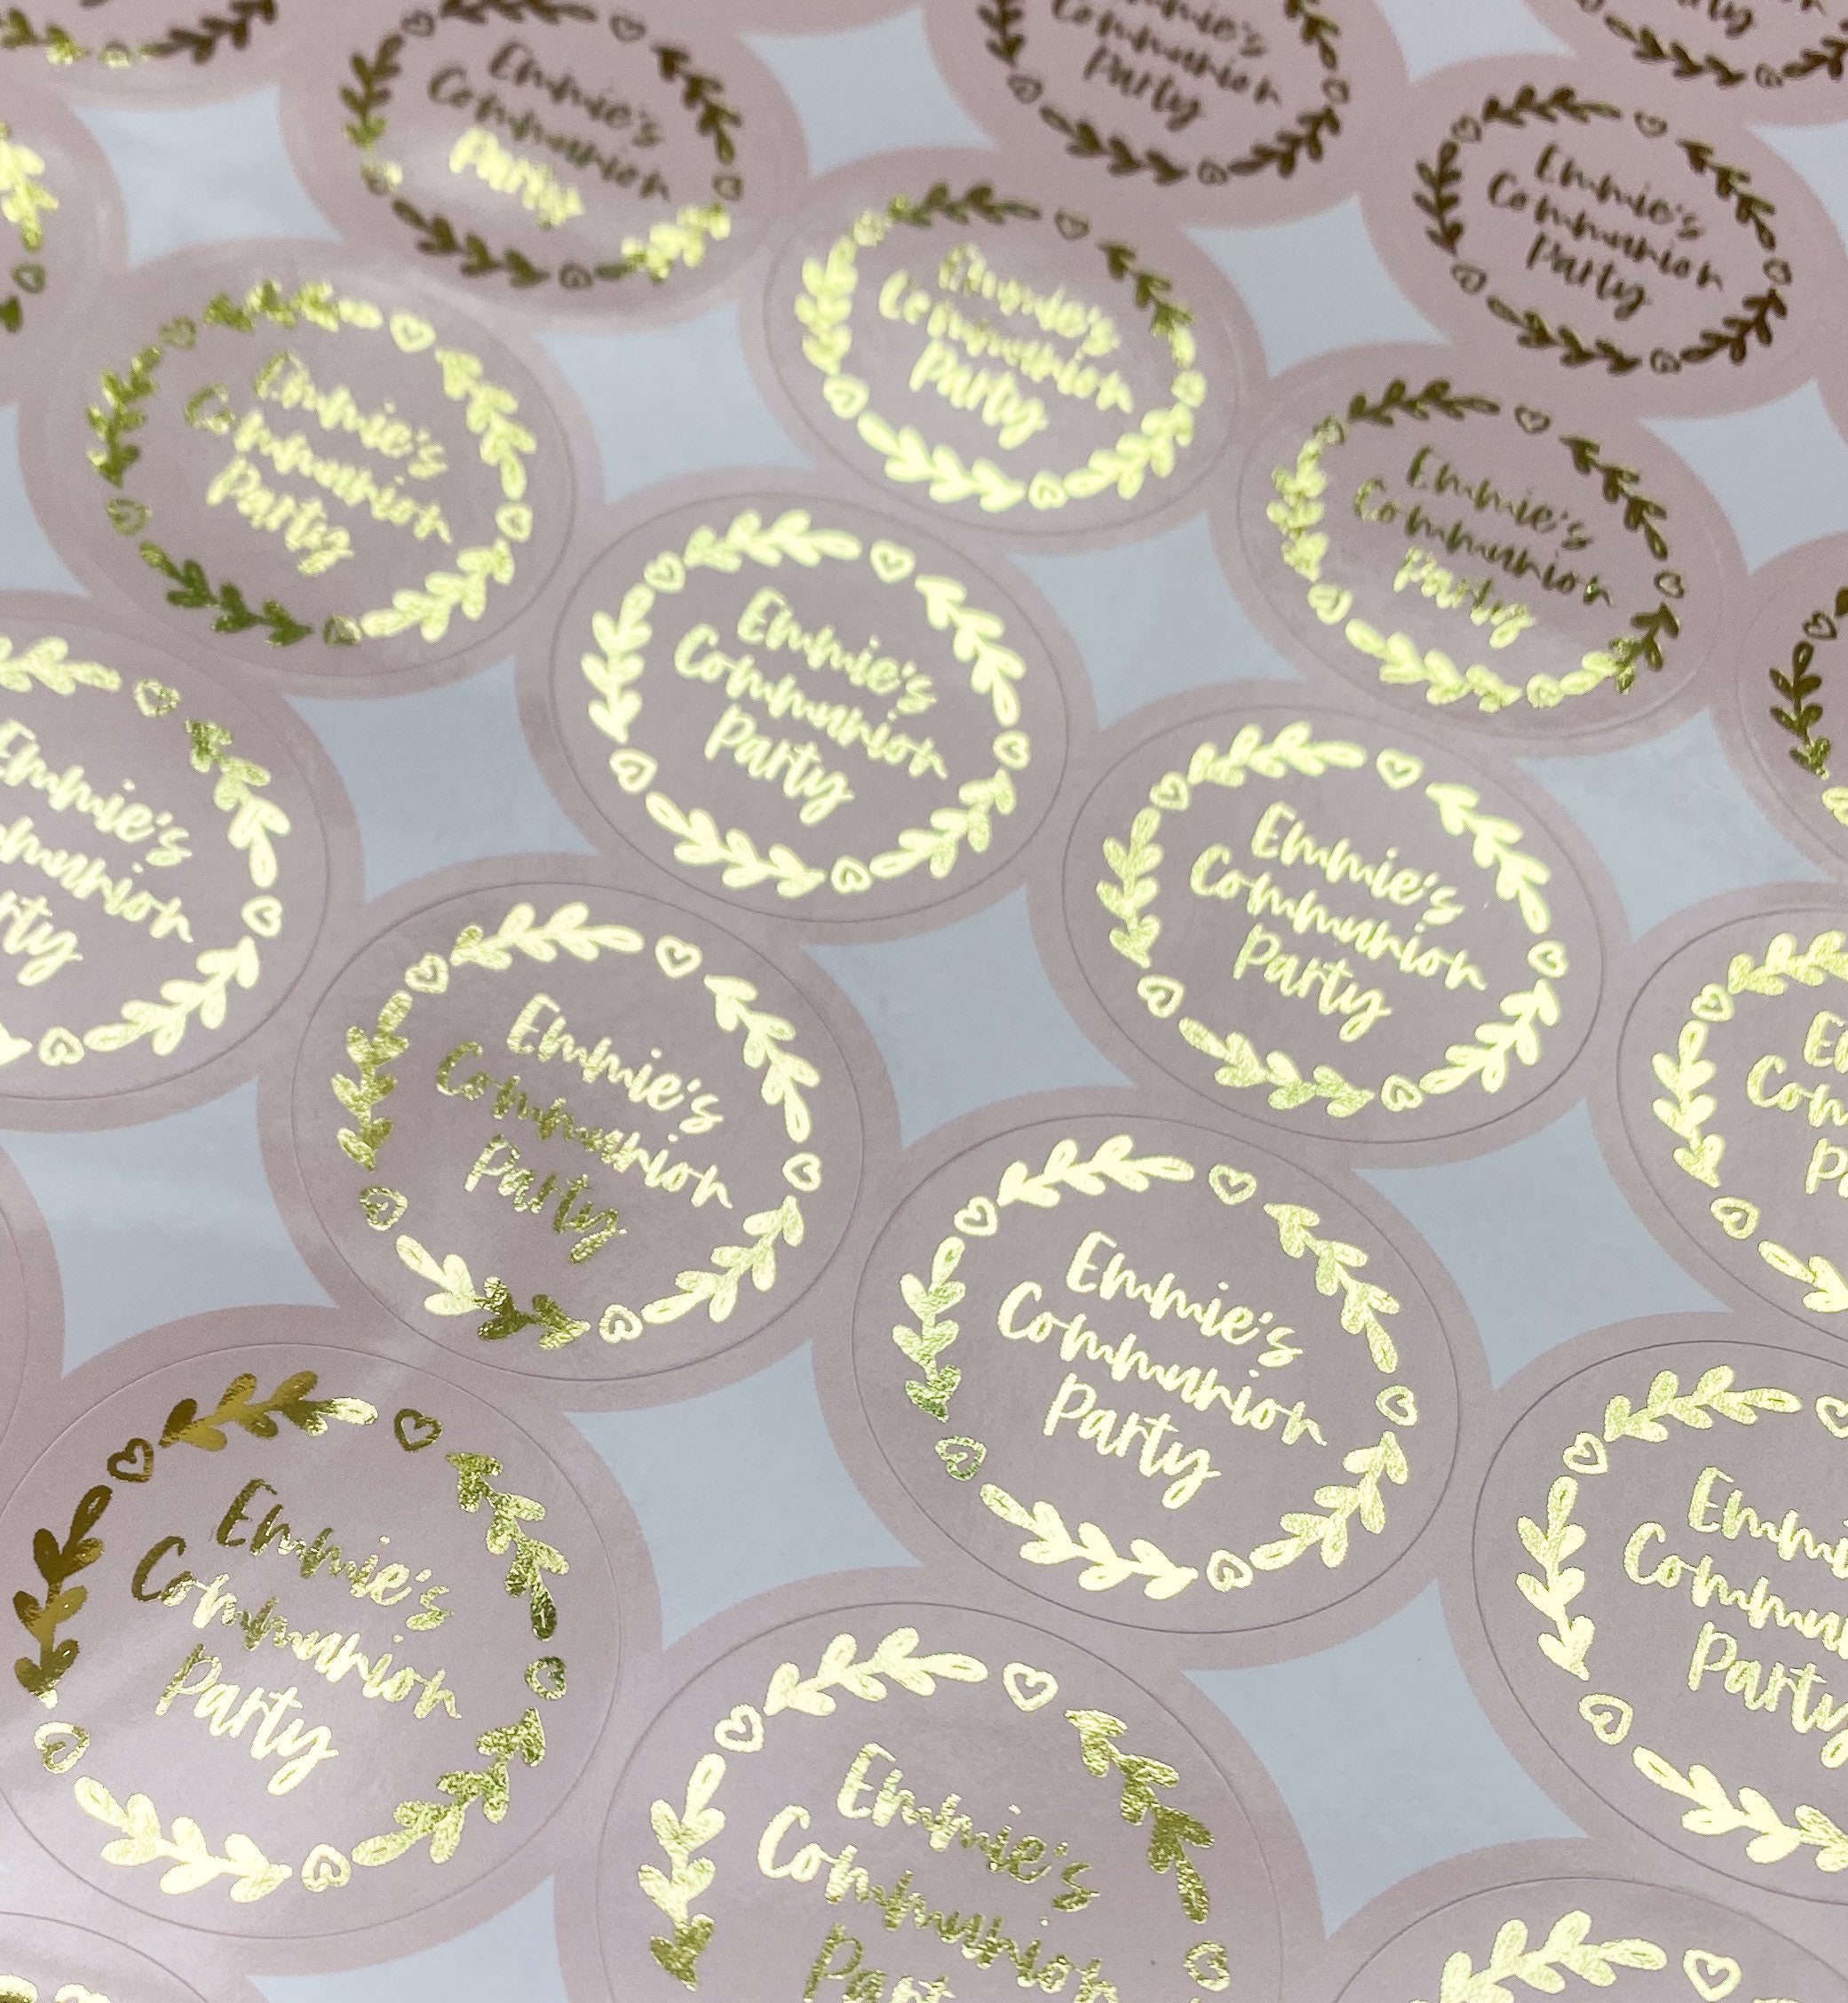 Etiquetas adhesivas personalizadas para fiestas de comunión